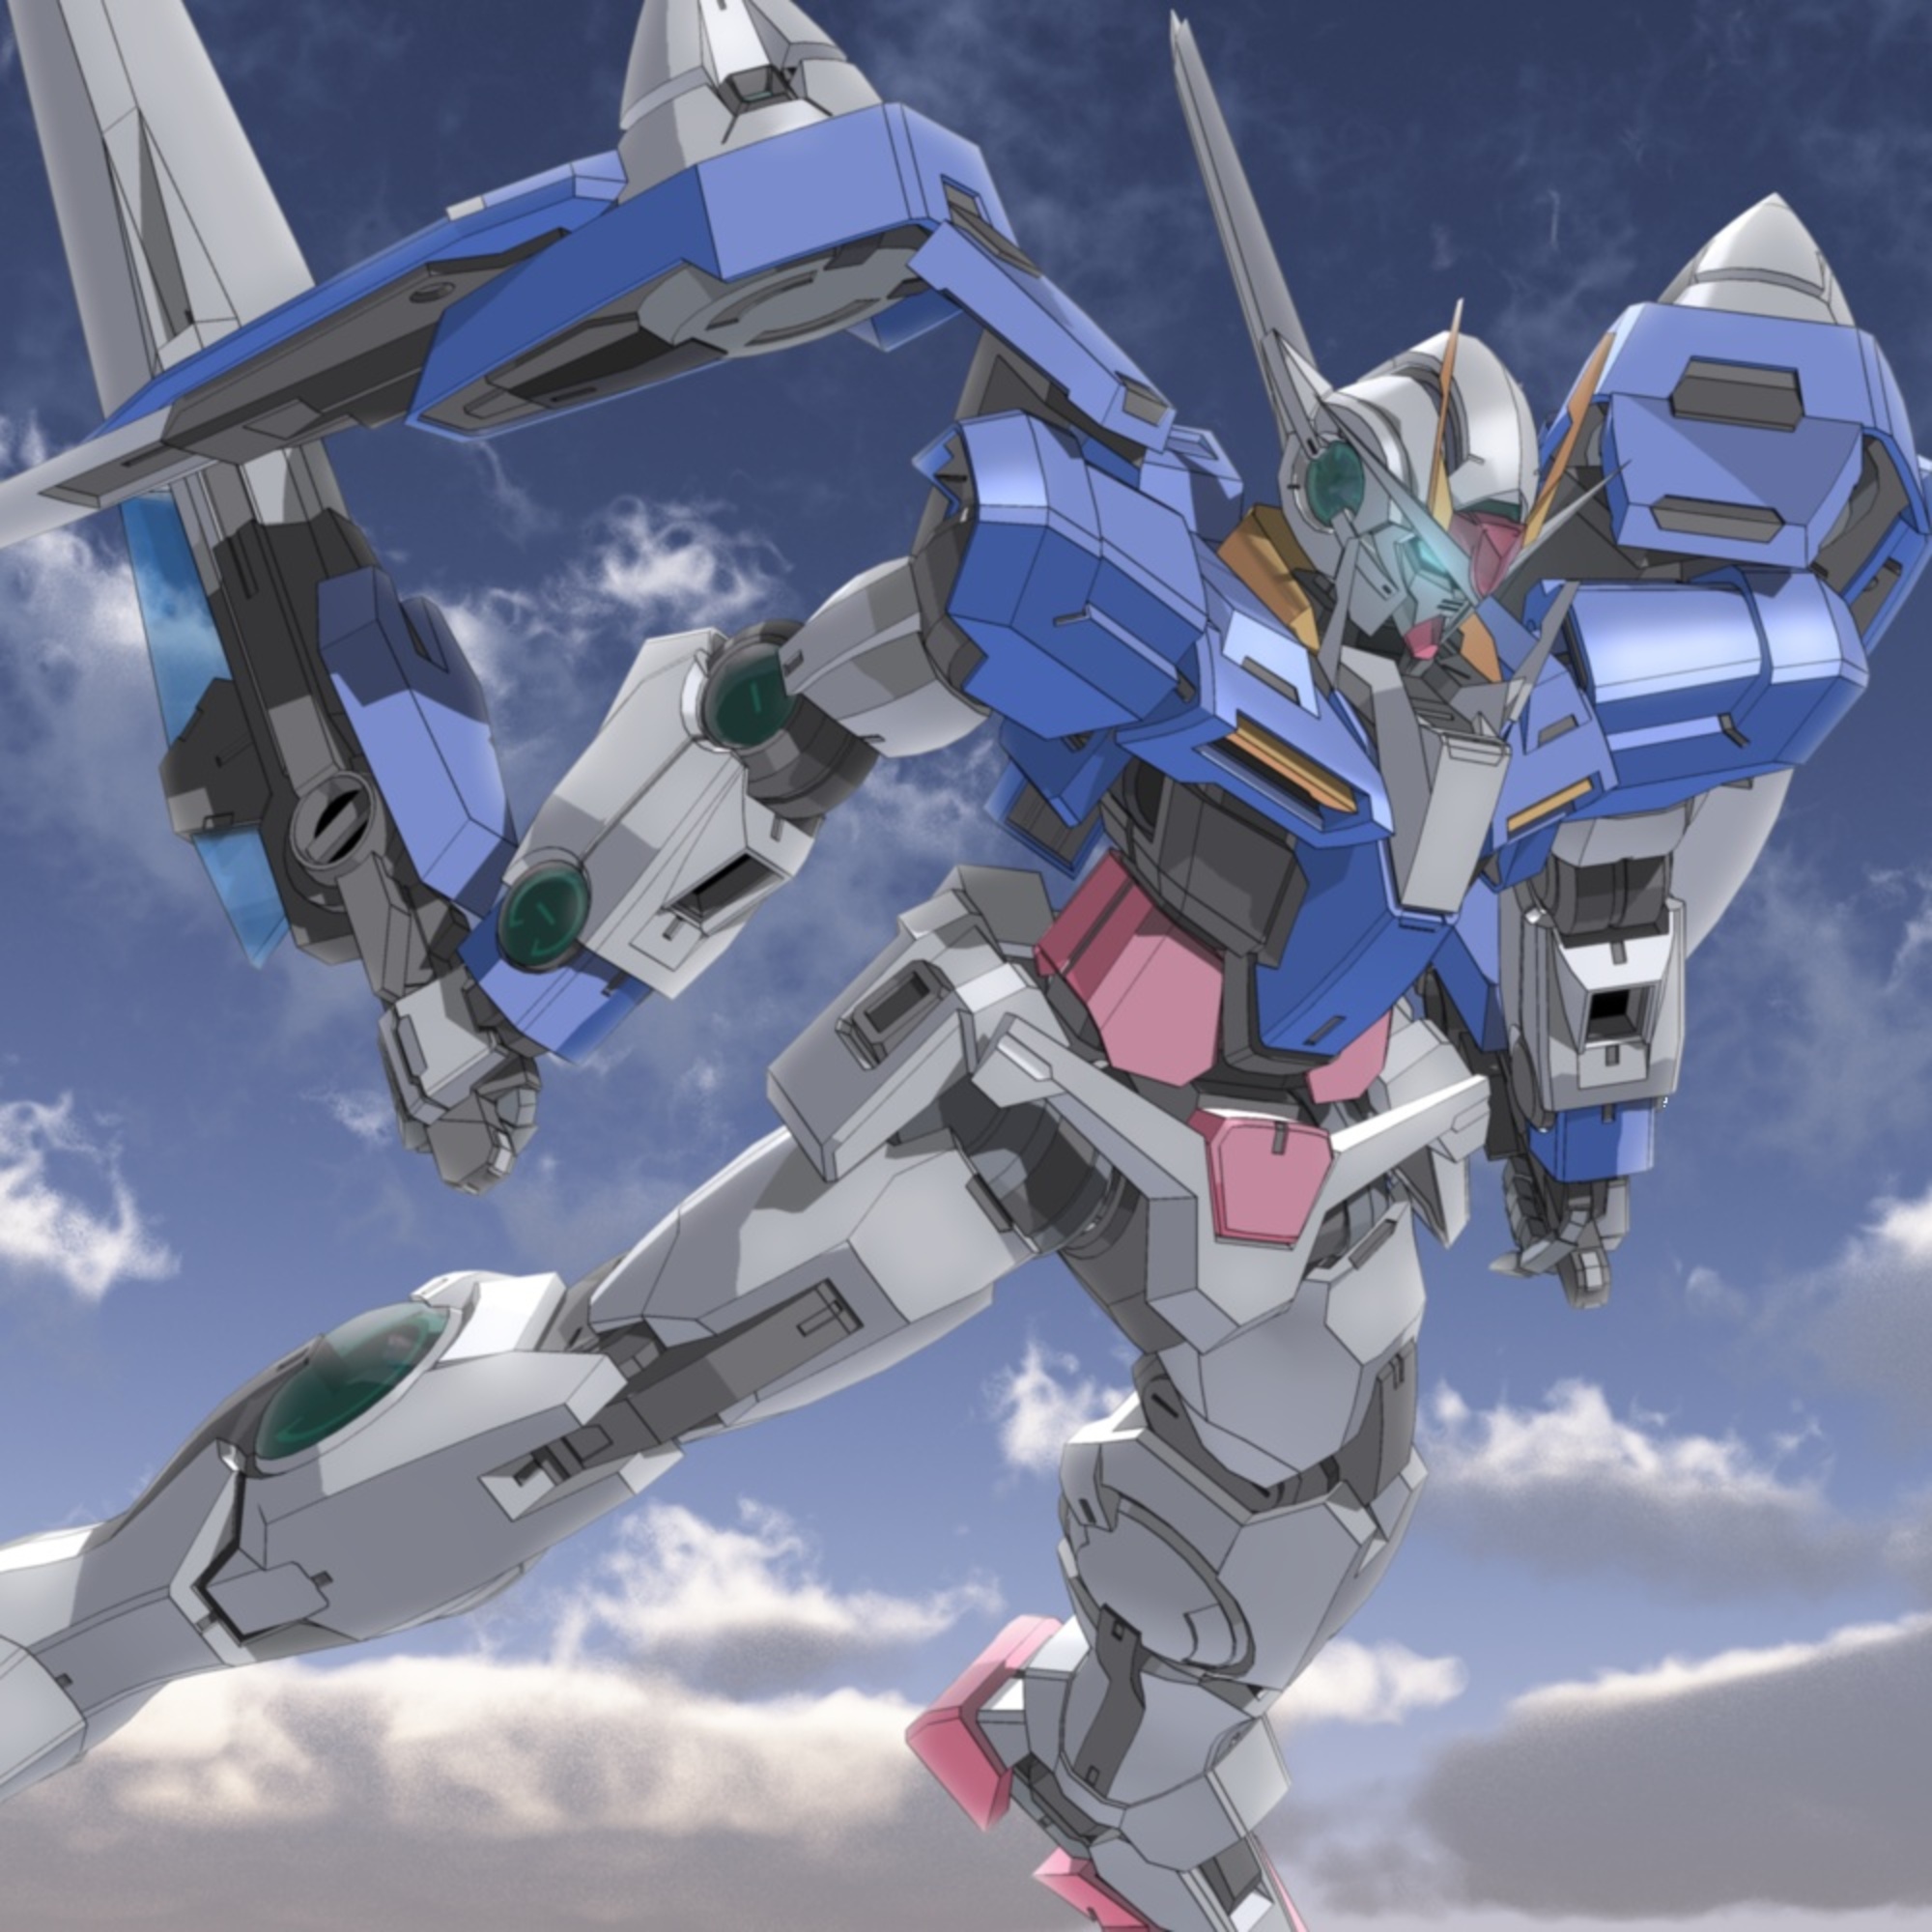 00 Gundam Mobile Suit Gundam 00 Anime Mechs Gundam Super Robot Wars Artwork Digital Art Fan Art 2000x2000